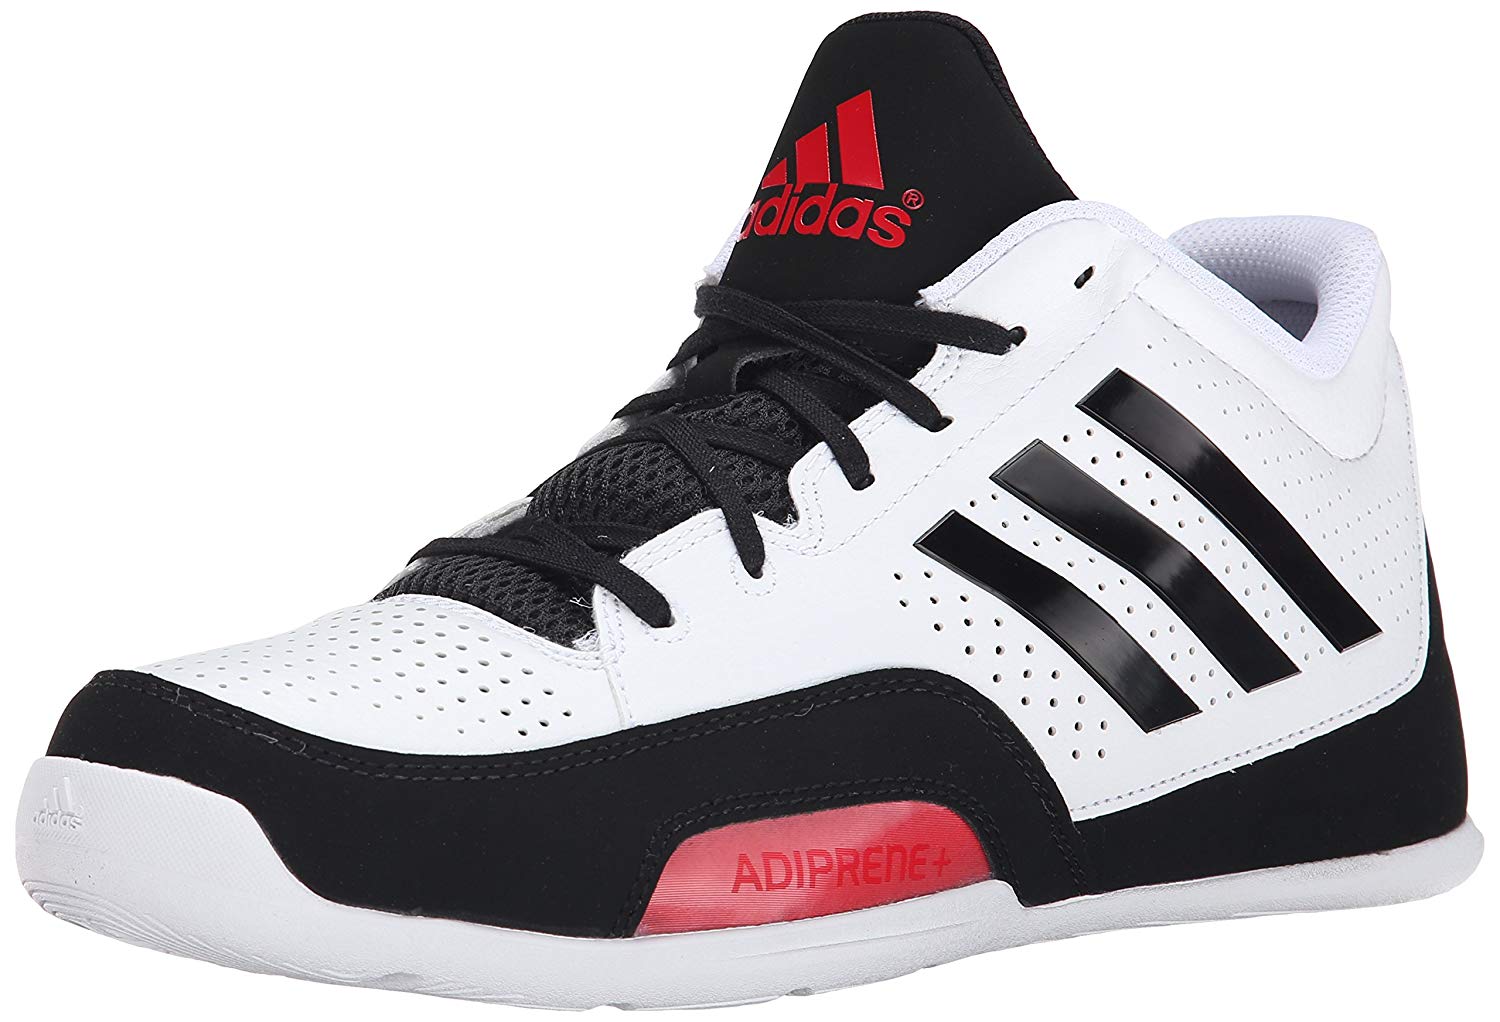 adidas adiprene basketball shoes